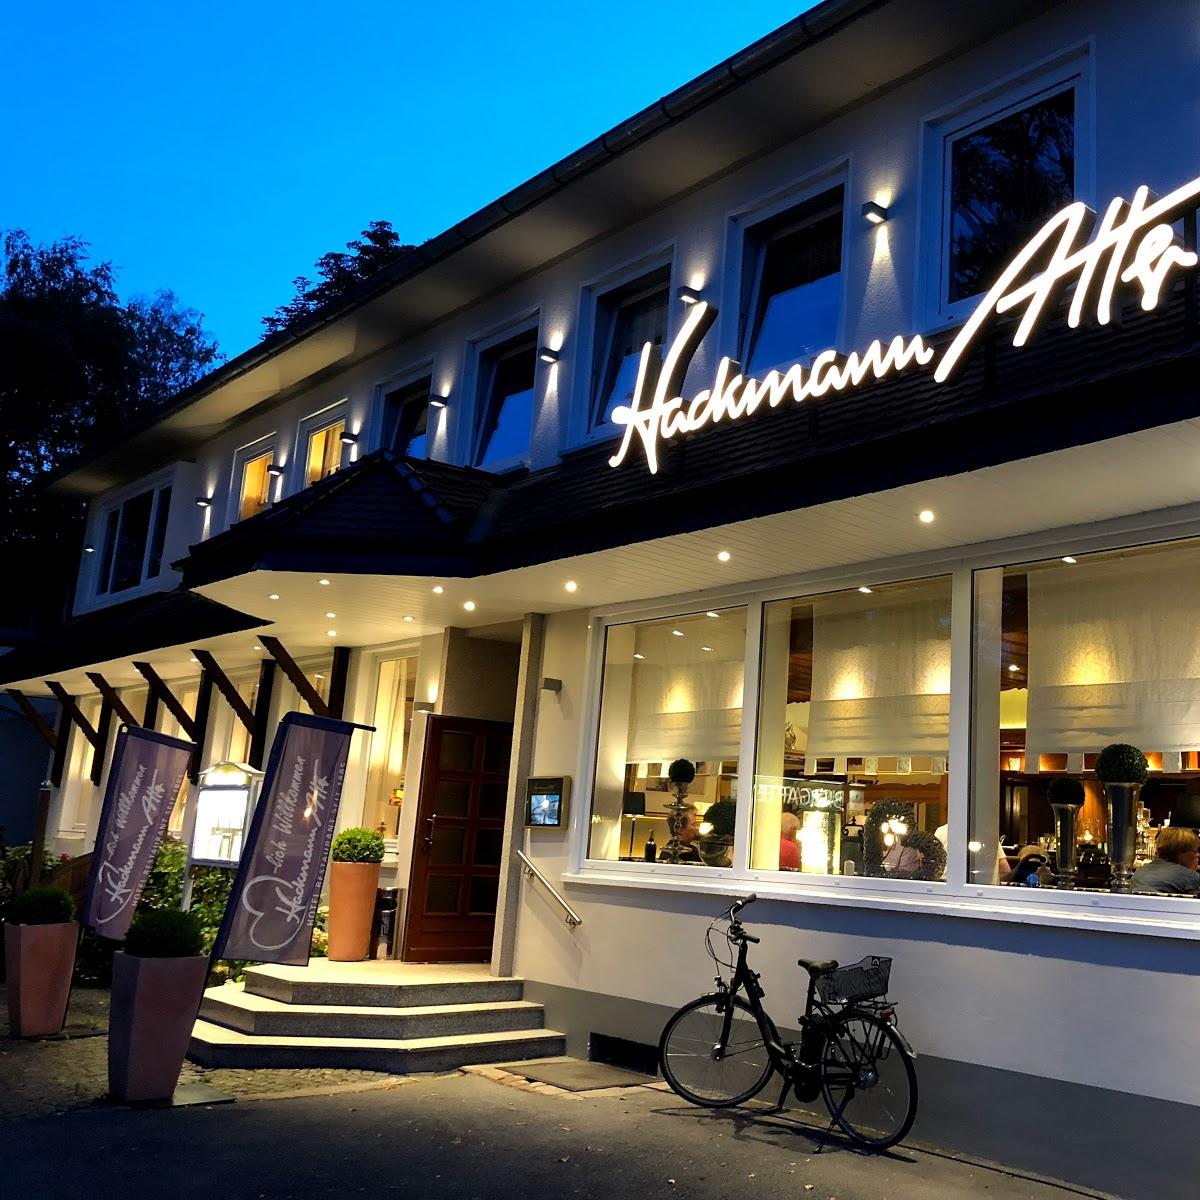 Restaurant "Hotel Restaurant Hackmann-Atter" in Osnabrück